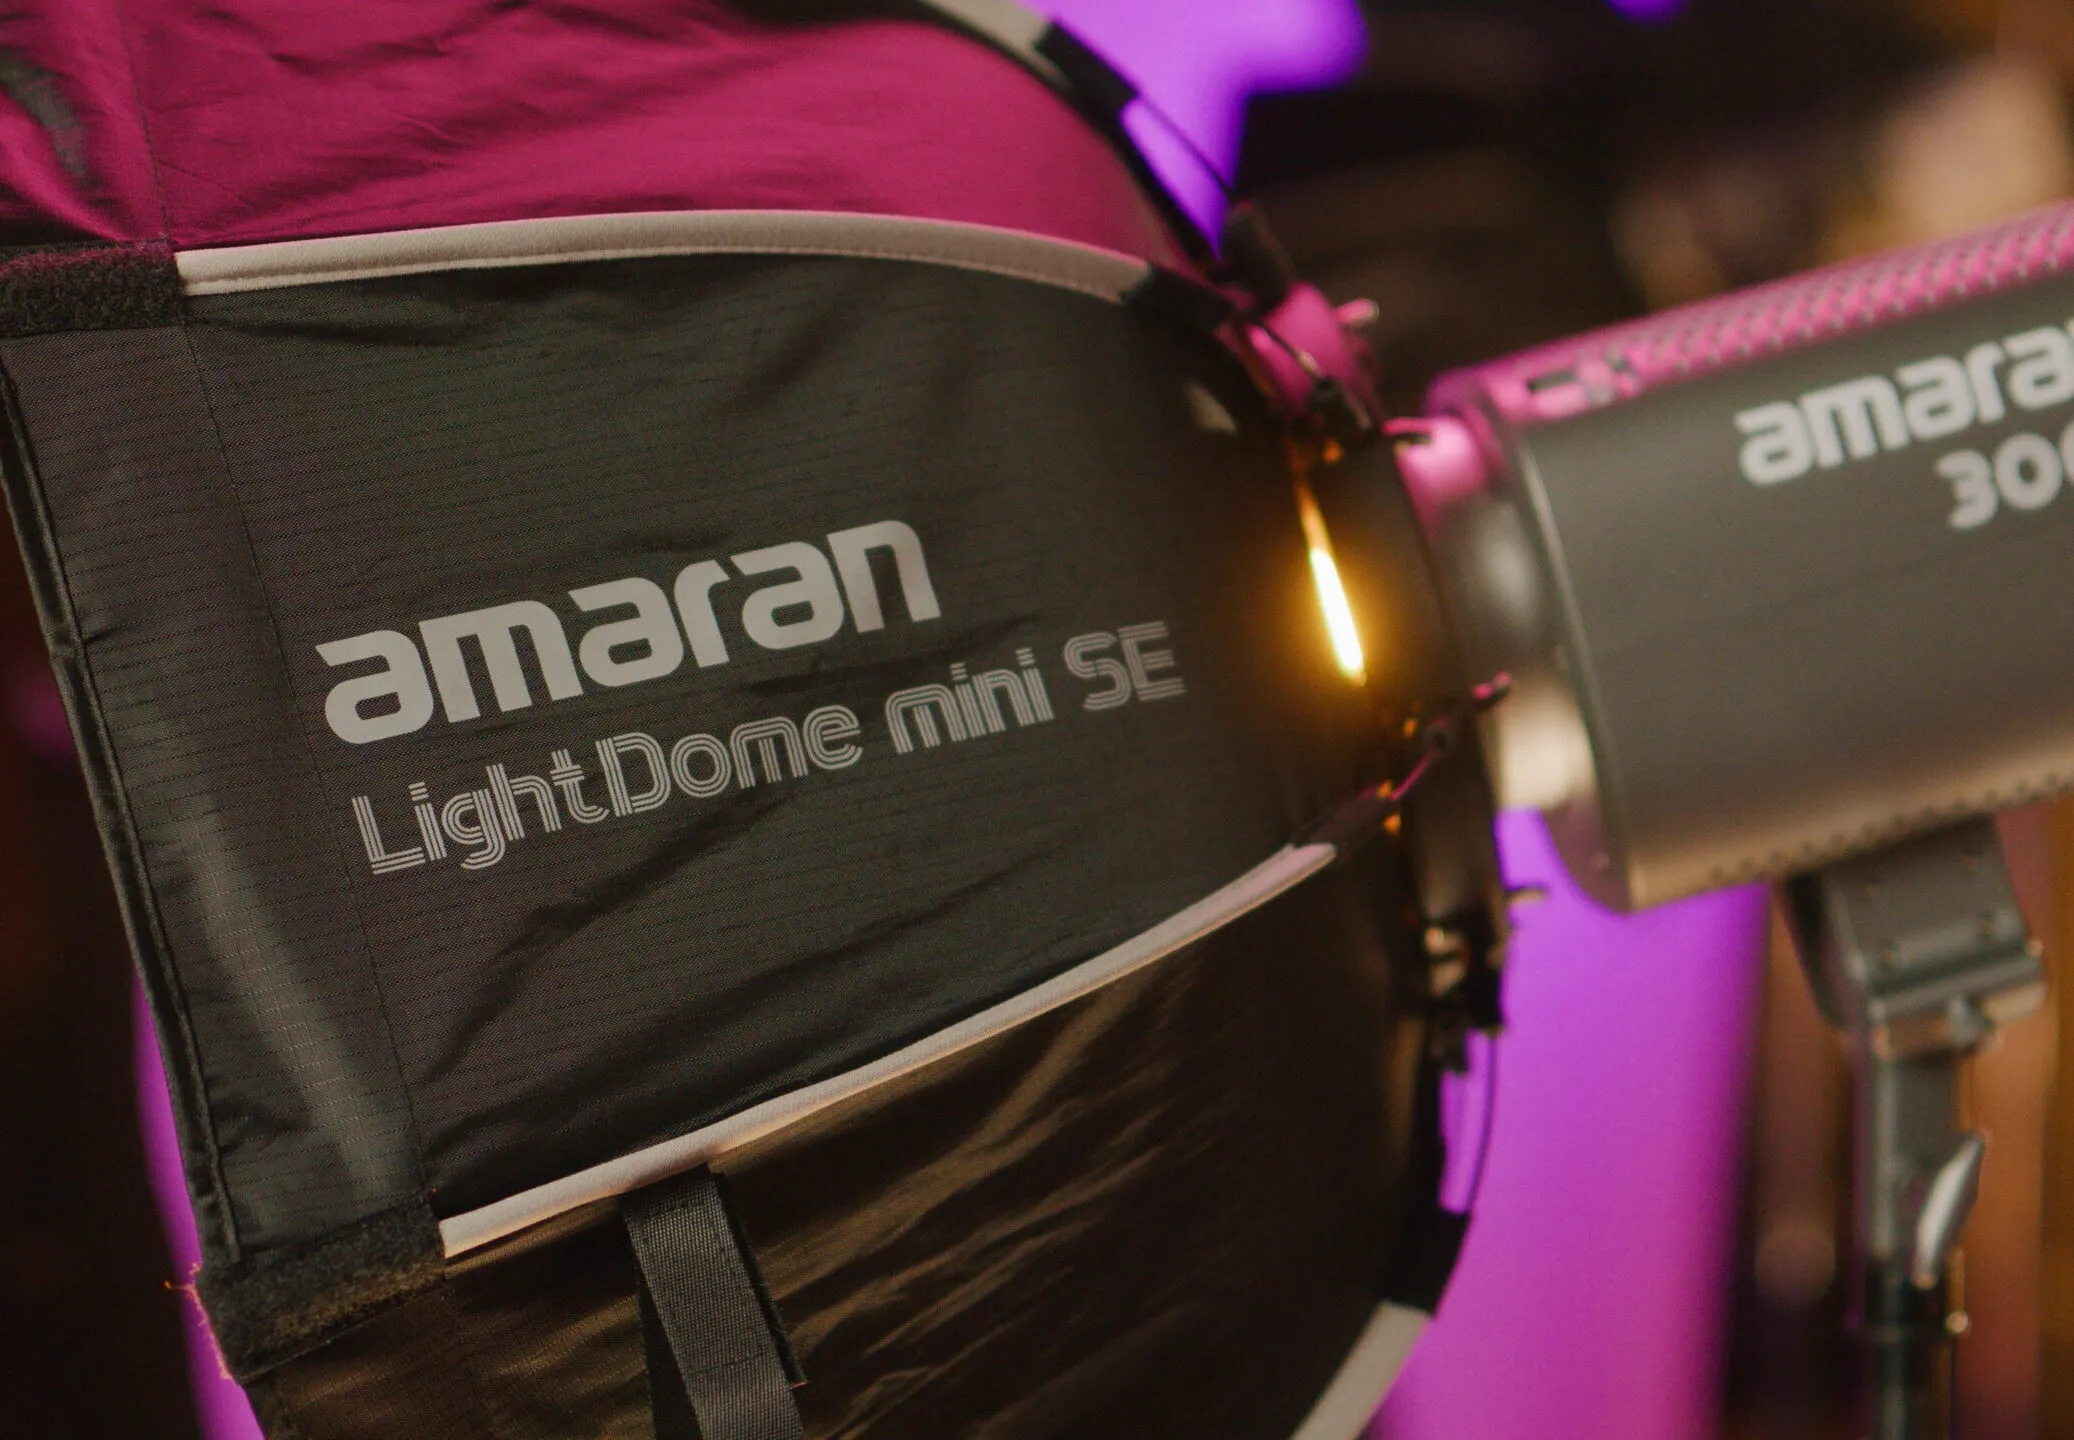 Aputure ra mắt đèn amaran 150c và 300c công suất lớn cùng phụ kiện tản sáng Light Dome Mini SE và Spotlight SE